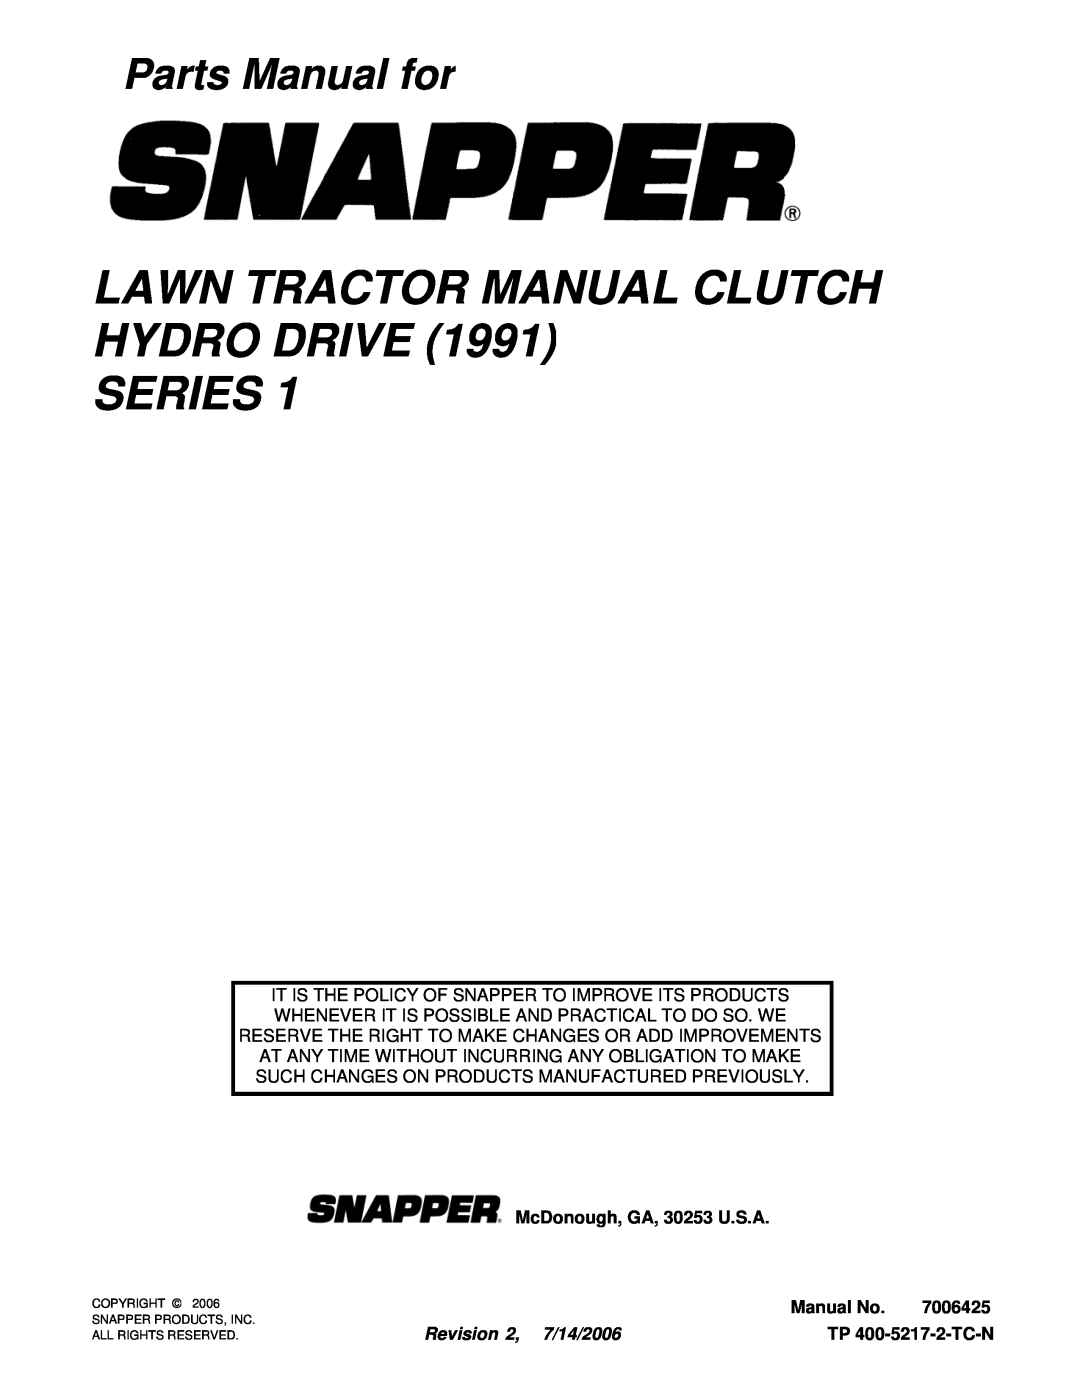 Snapper LT14H331KV Lawn Tractor Manual Clutch Hydro Drive Series, Parts Manual for, McDonough, GA, 30253 U.S.A, Manual No 